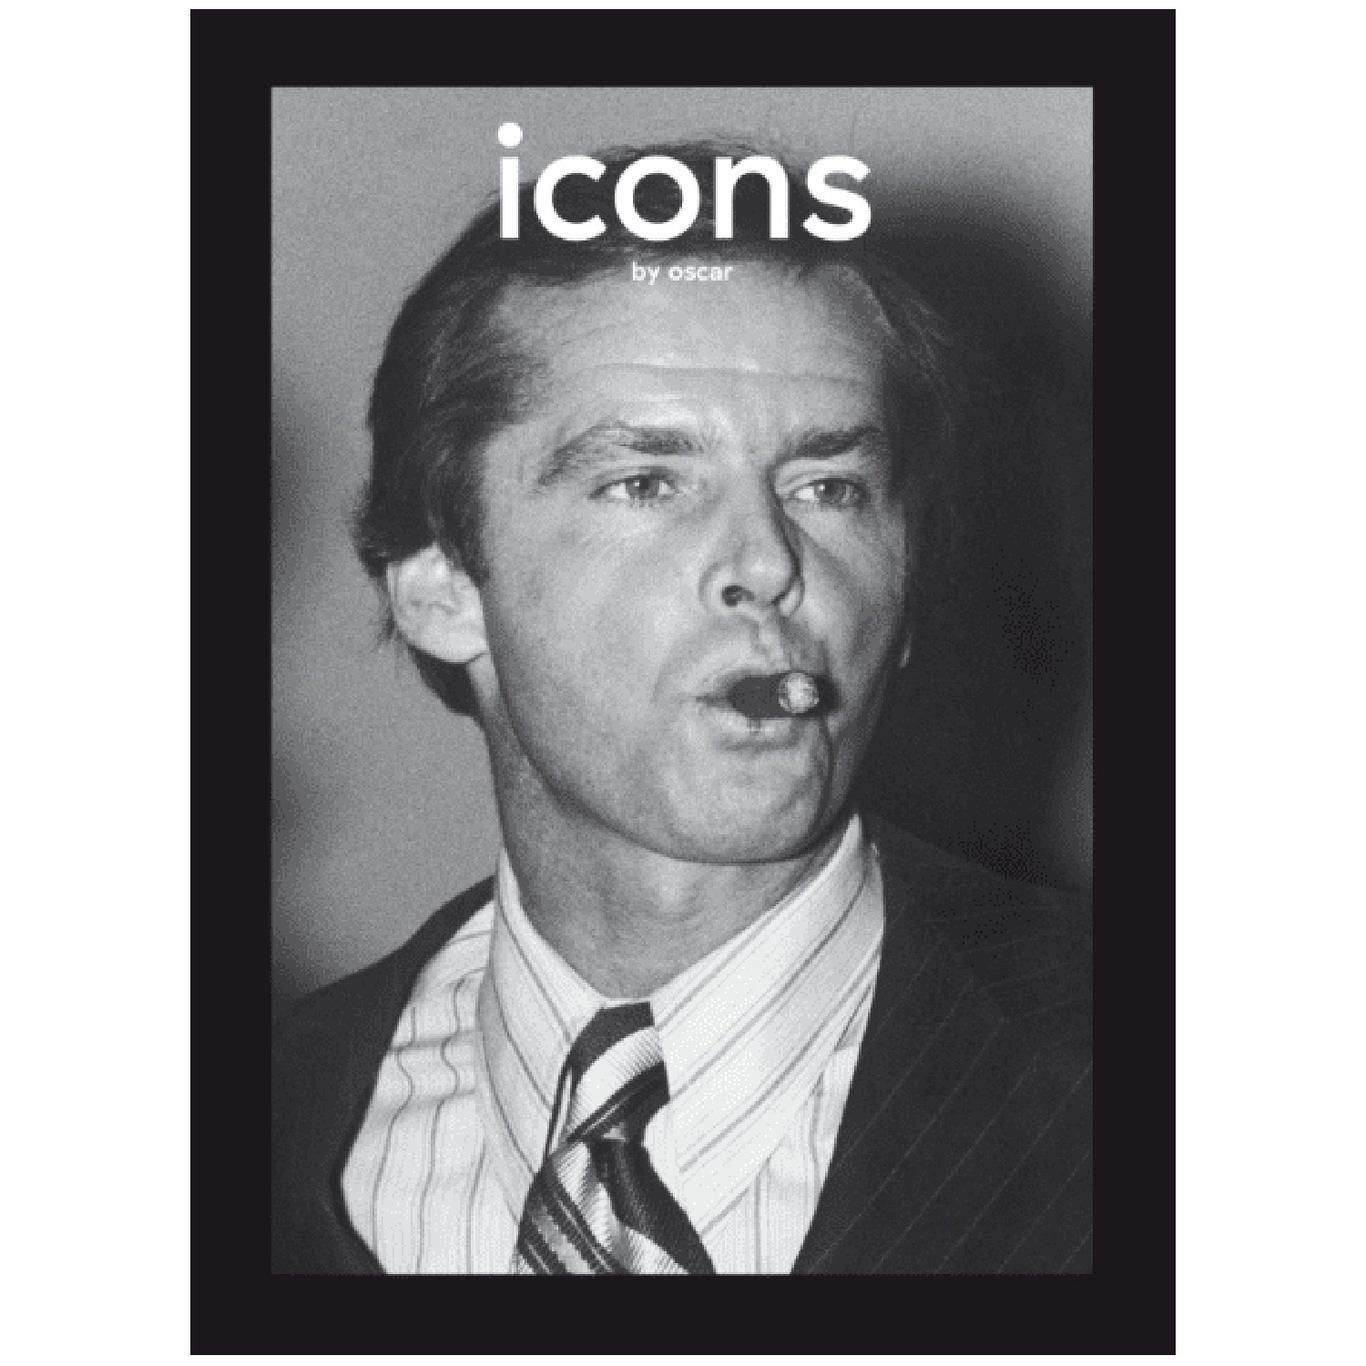 Icons by Oscar Bog